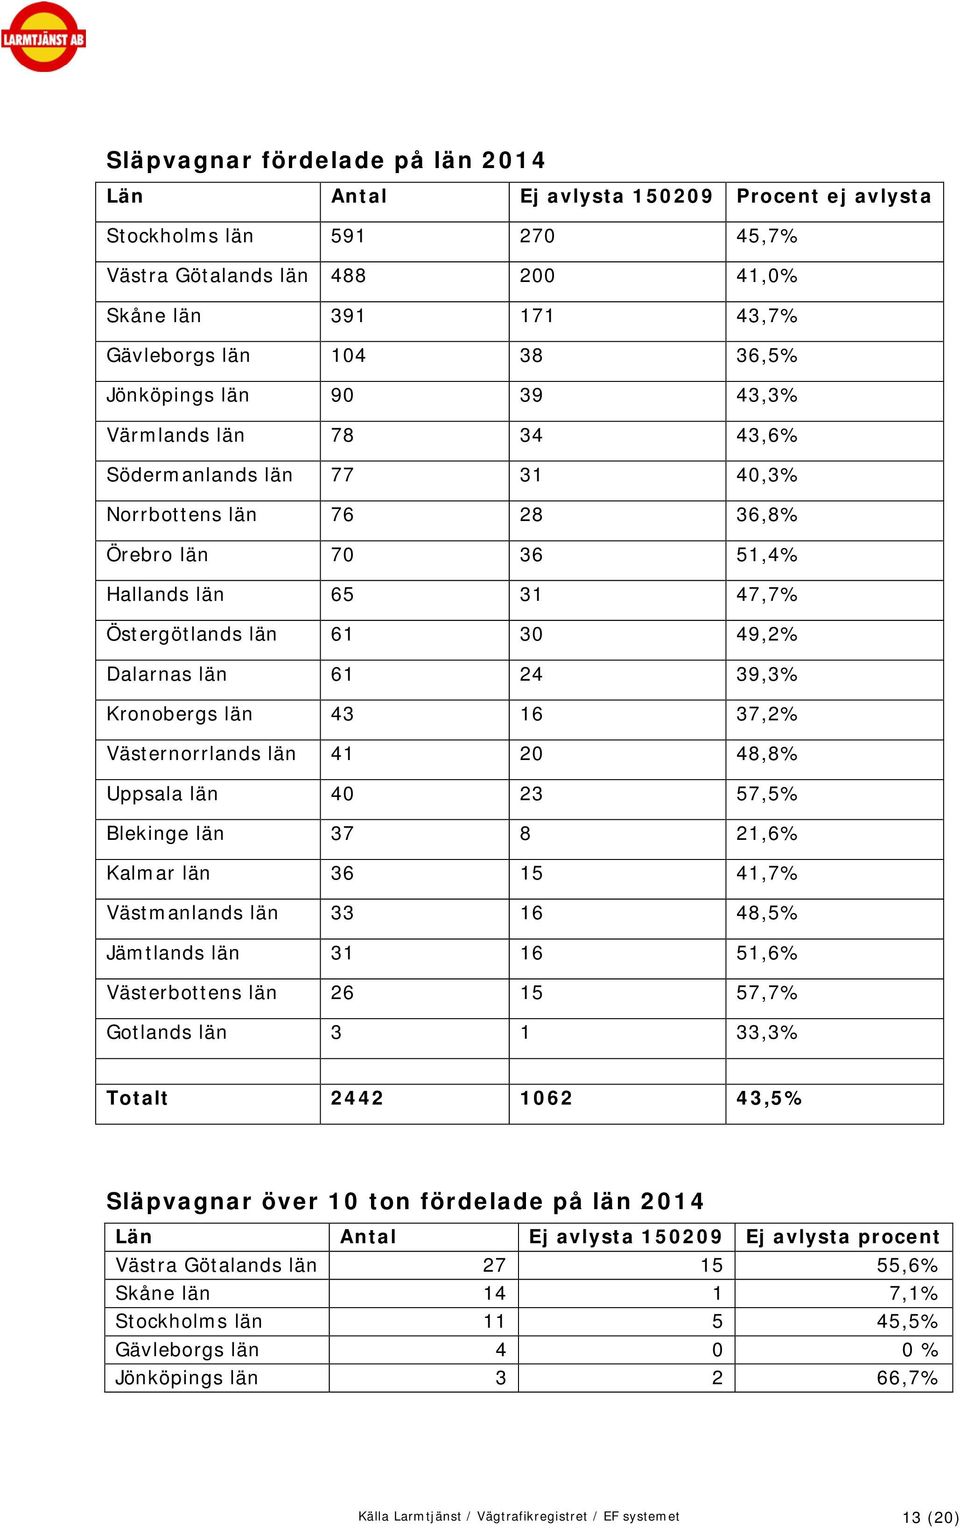 län 61 24 39,3% Kronobergs län 43 16 37,2% Västernorrlands län 41 20 48,8% Uppsala län 40 23 57,5% Blekinge län 37 8 21,6% Kalmar län 36 15 41,7% Västmanlands län 33 16 48,5% Jämtlands län 31 16